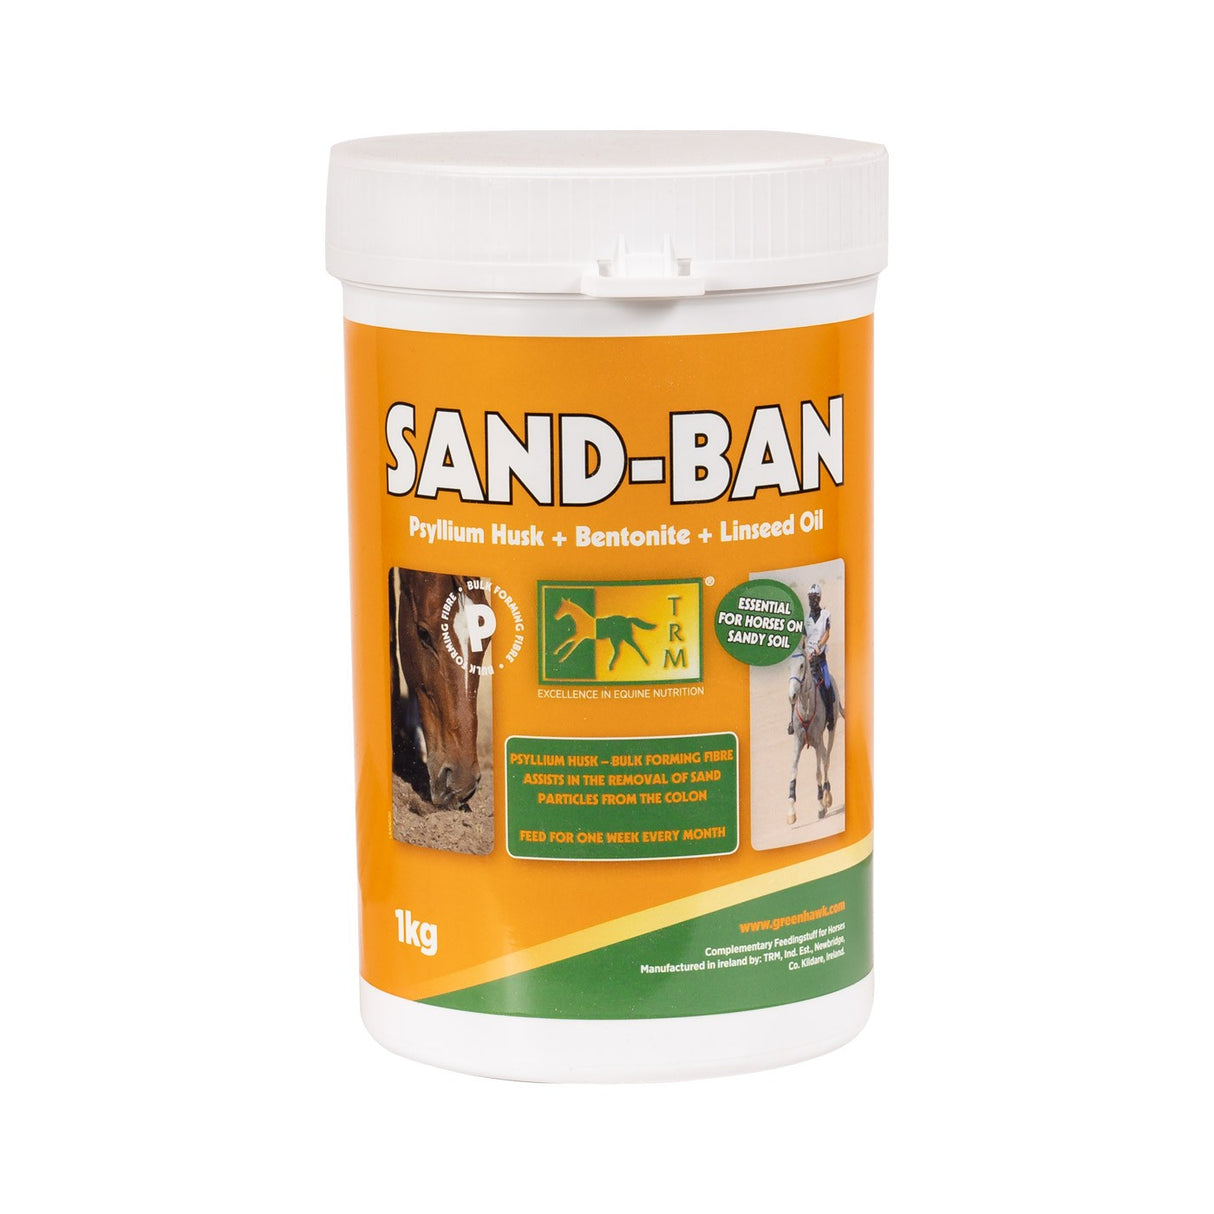 TRM Sand-Ban 1 Kg